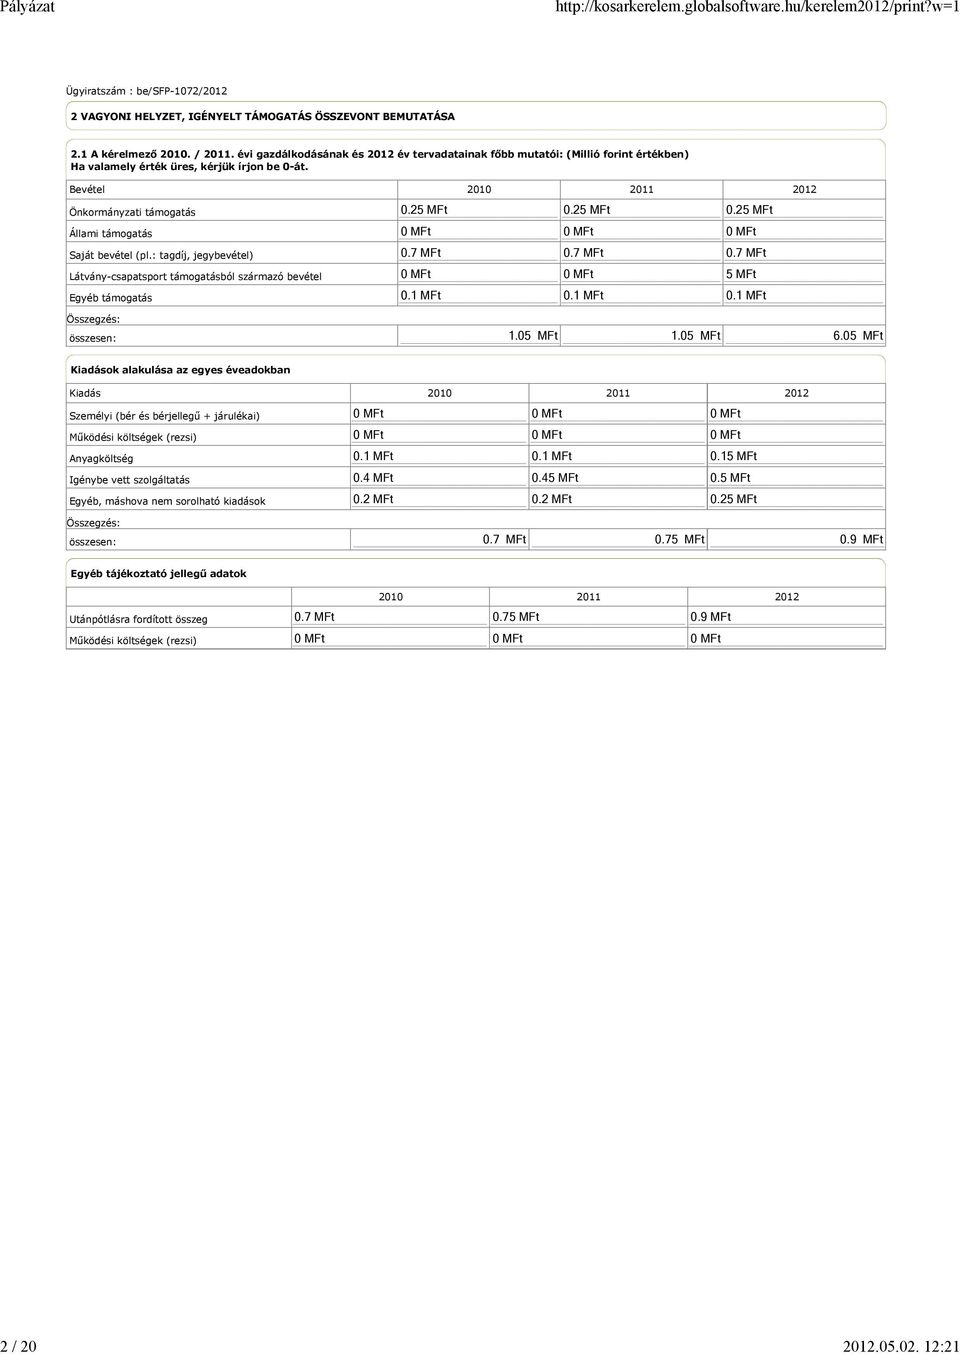 Bevétel 2010 2011 2012 Önkormányzati támogatás Állami támogatás Saját bevétel (pl.: tagdíj, jegybevétel) Látvány-csapatsport támogatásból származó bevétel Egyéb támogatás 0.25 MFt 0.